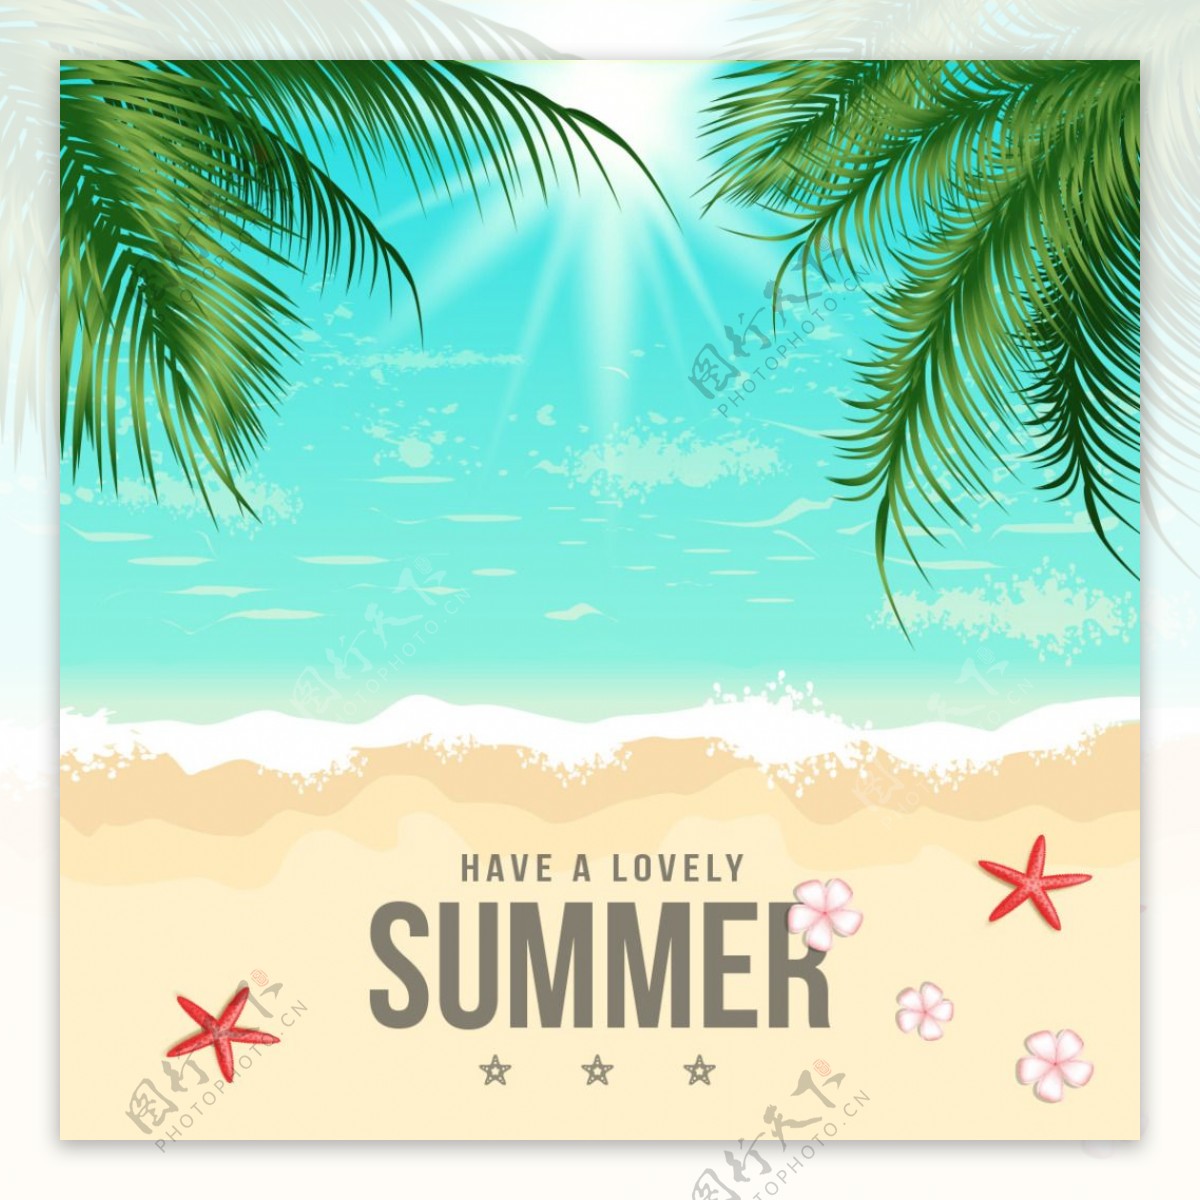 夏季夏天唯美手绘沙滩插画